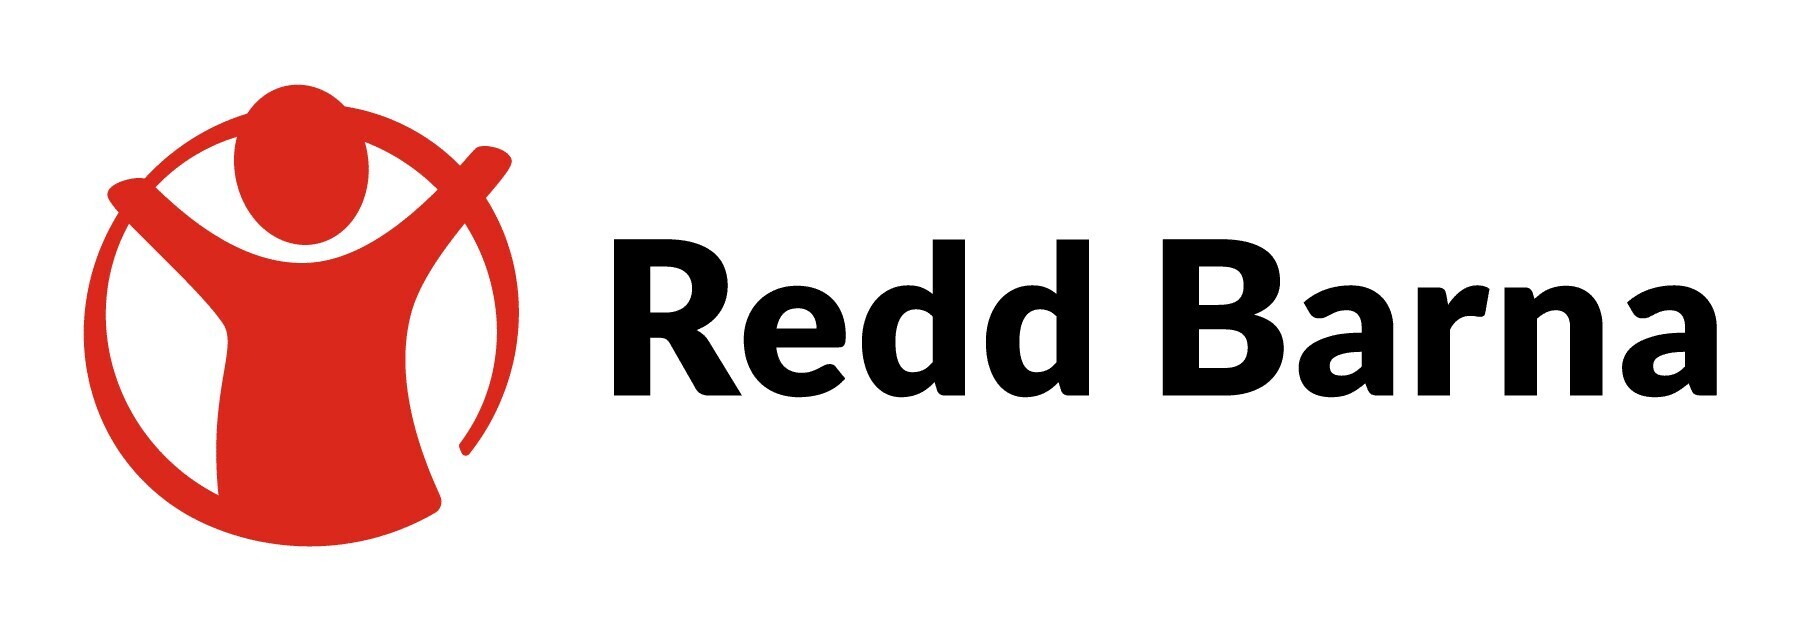 Redd barna logo